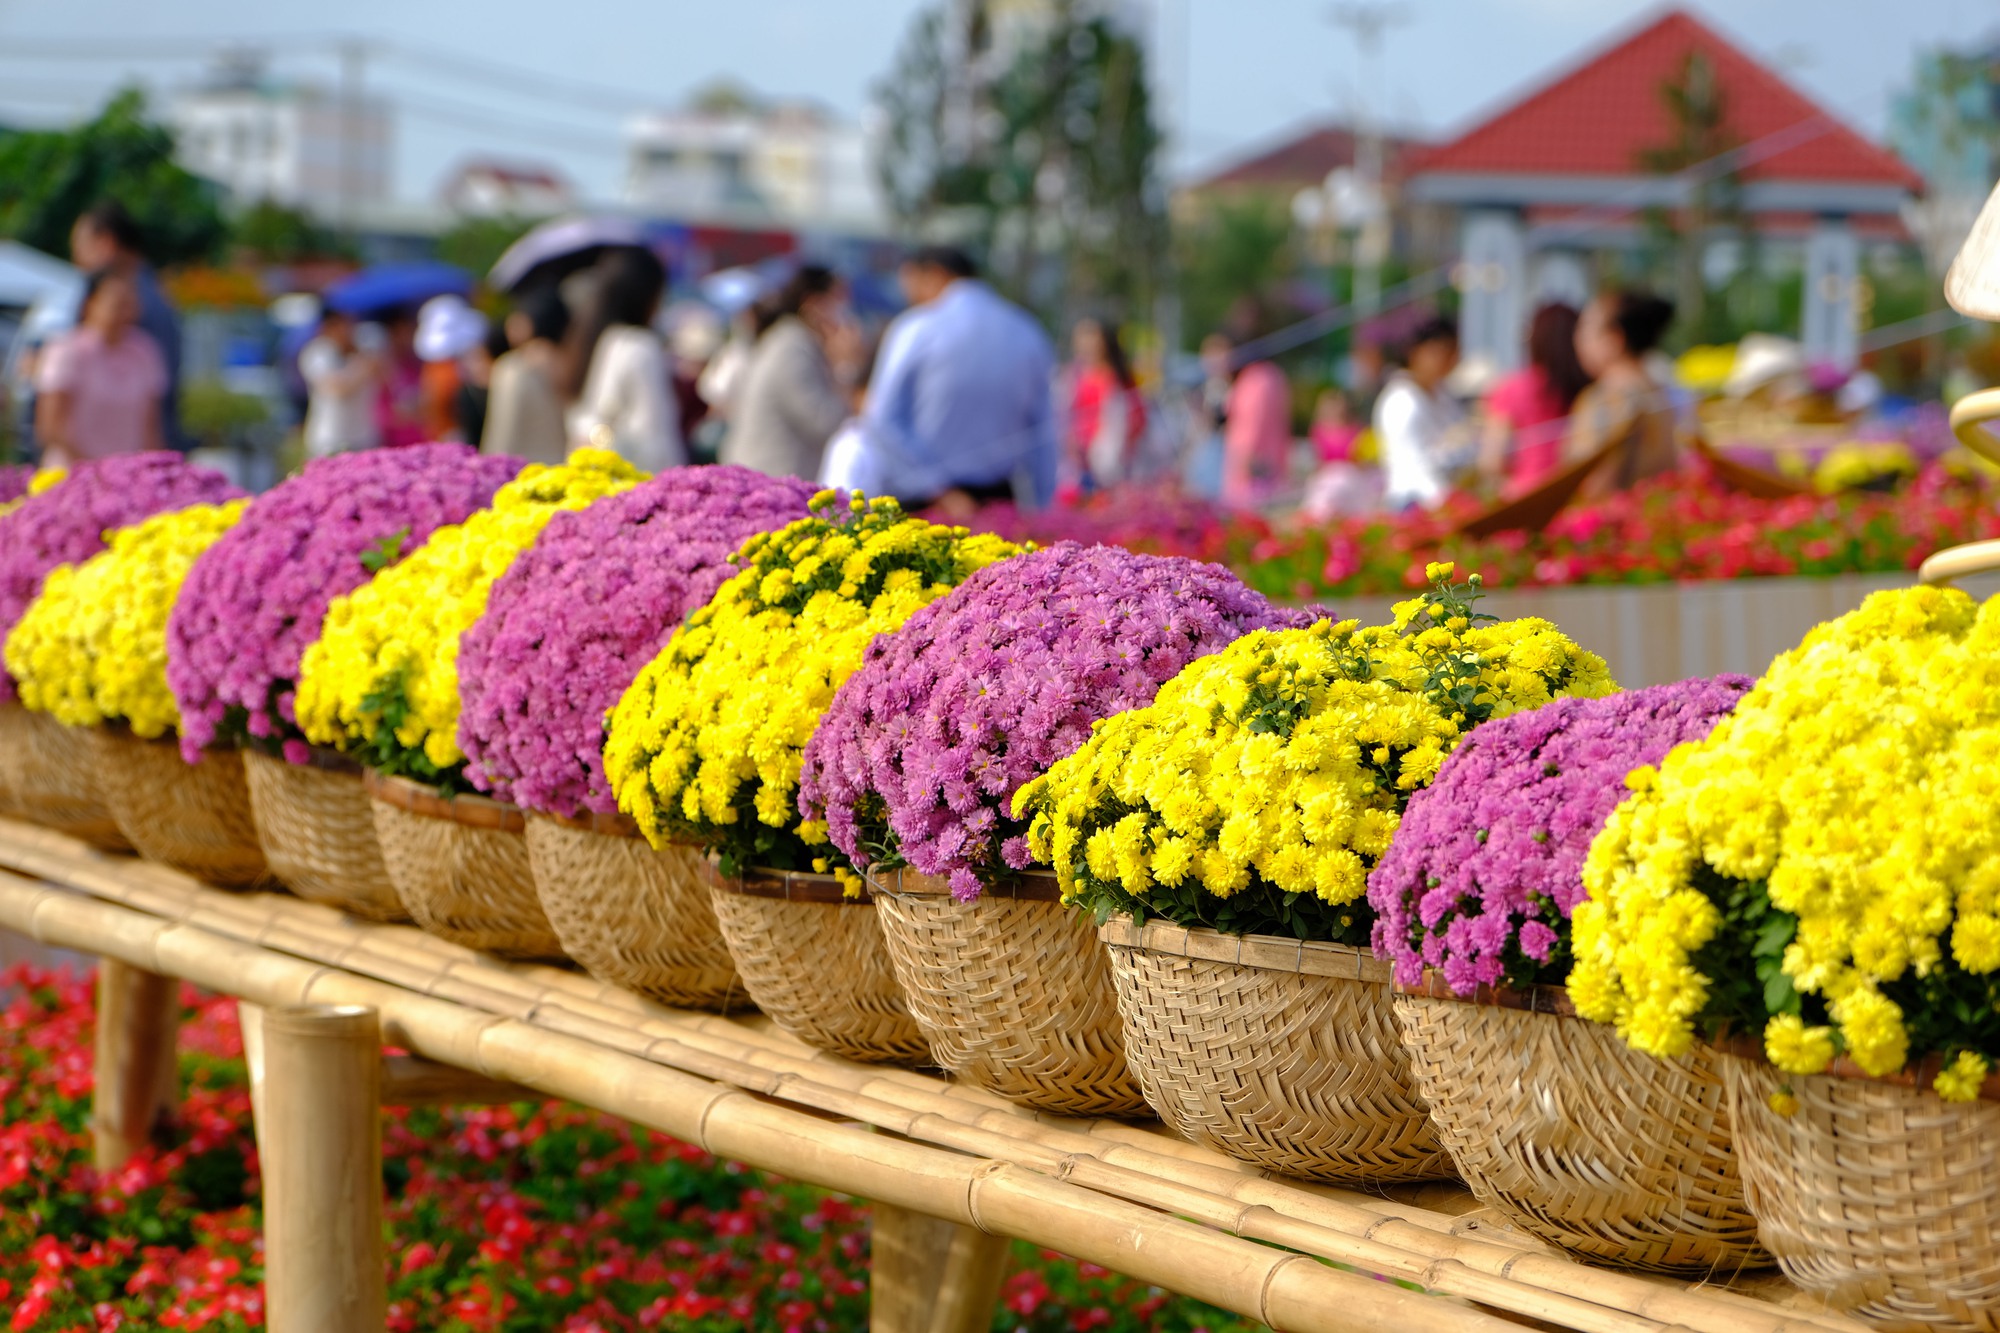 Mê mẩn những chậu hoa cúc nhiều màu tại Festival hoa Sa Đéc - Ảnh 2.